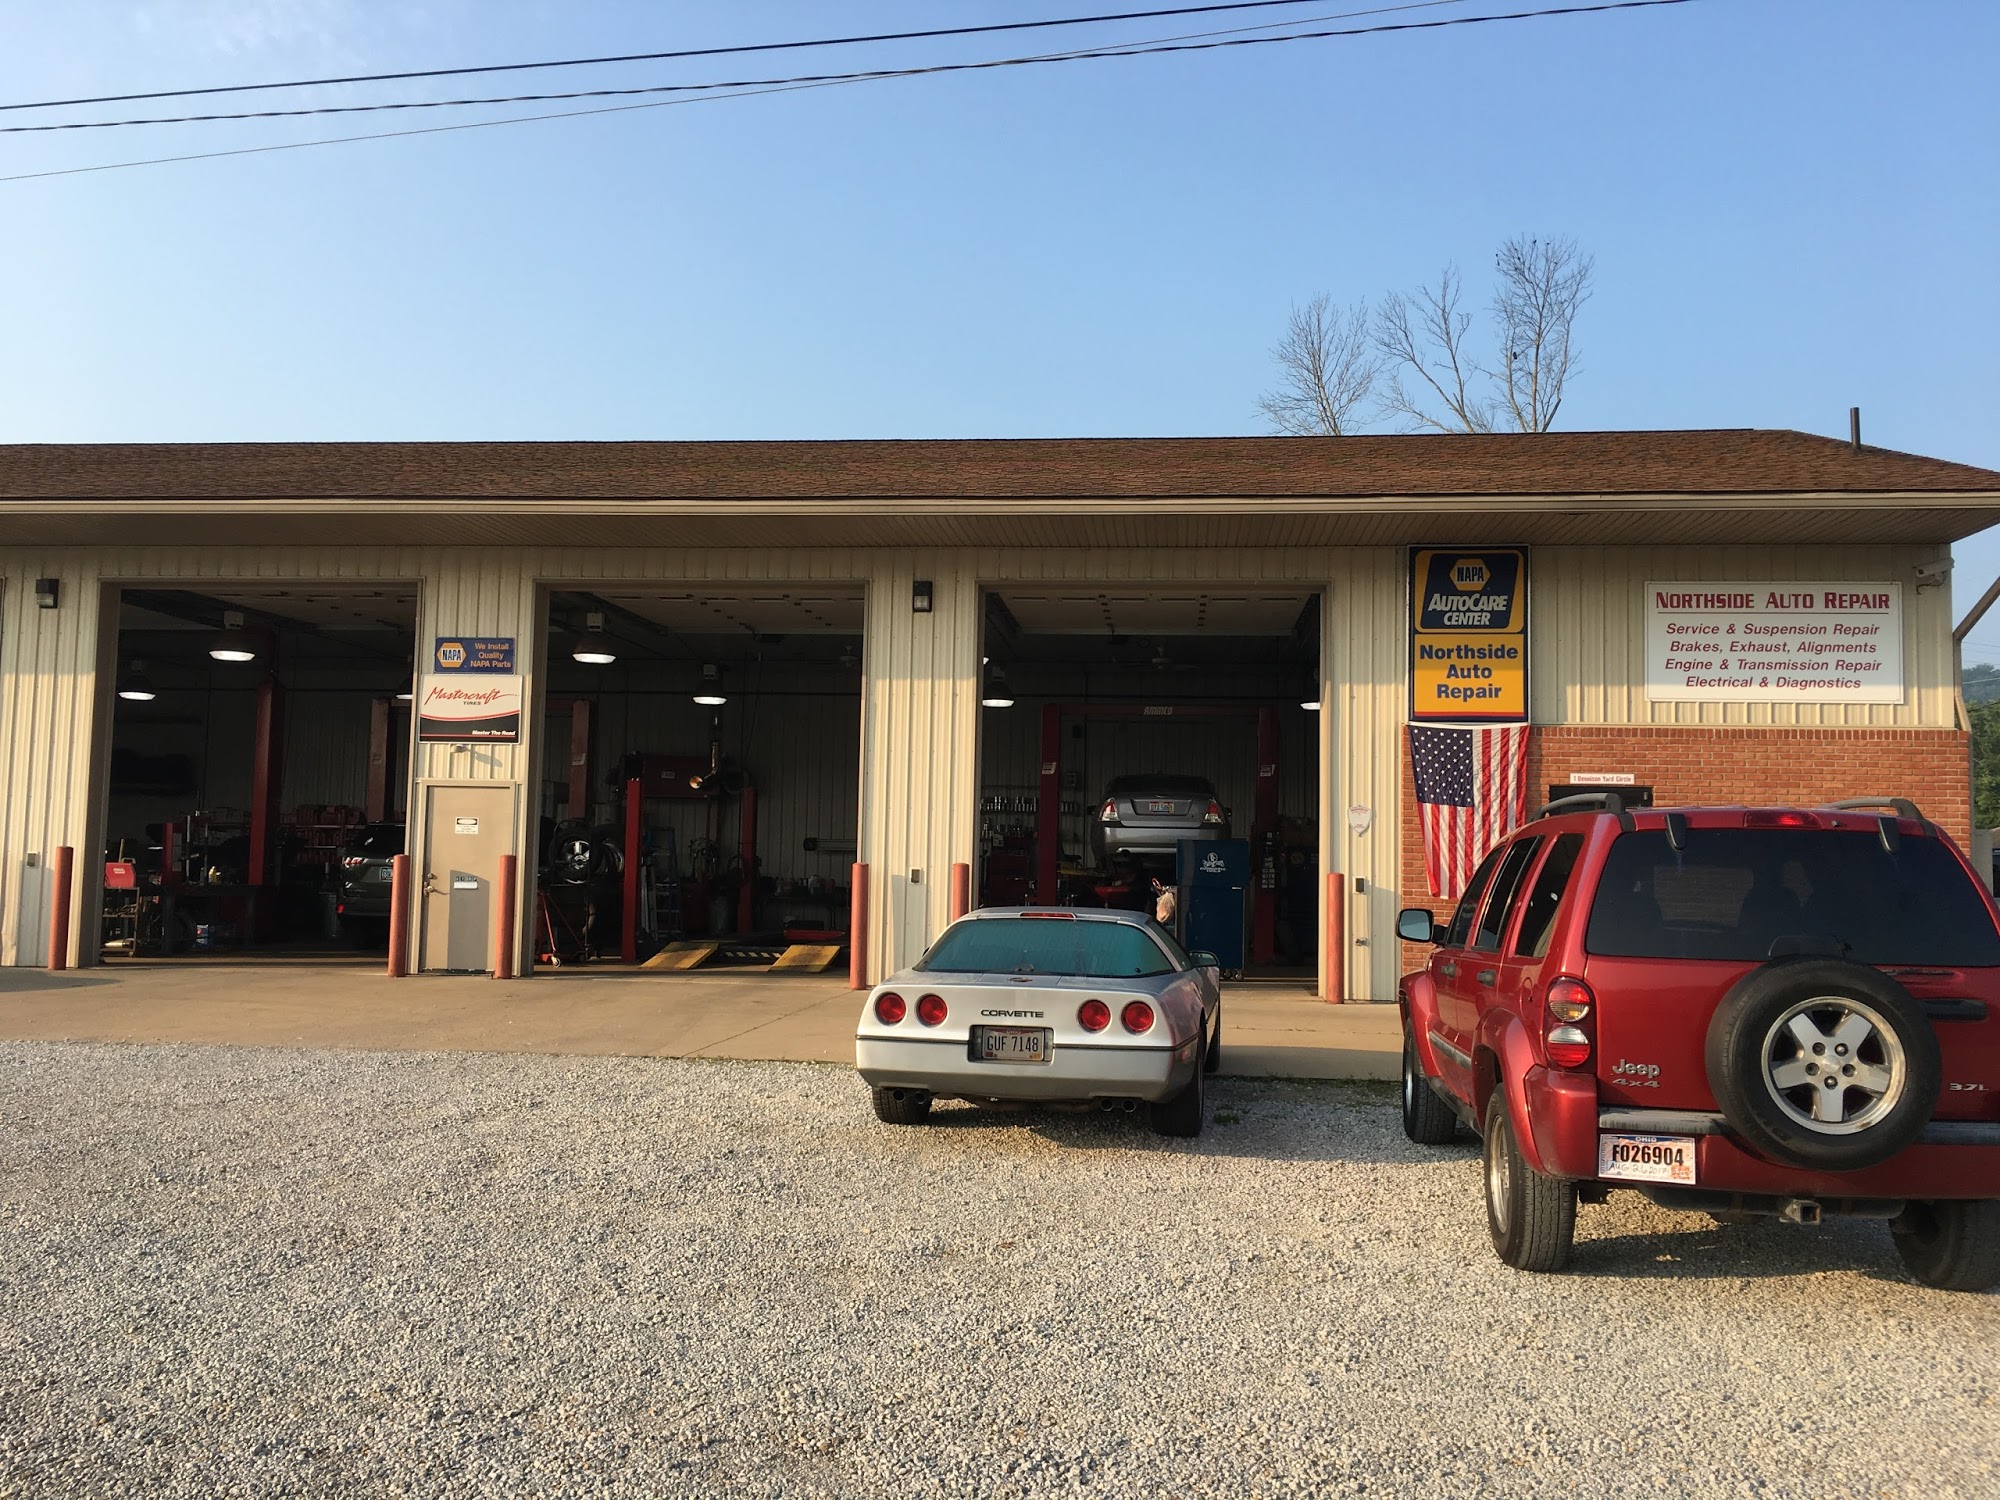 Northside Auto Repair ( Napa Auto Care Center)